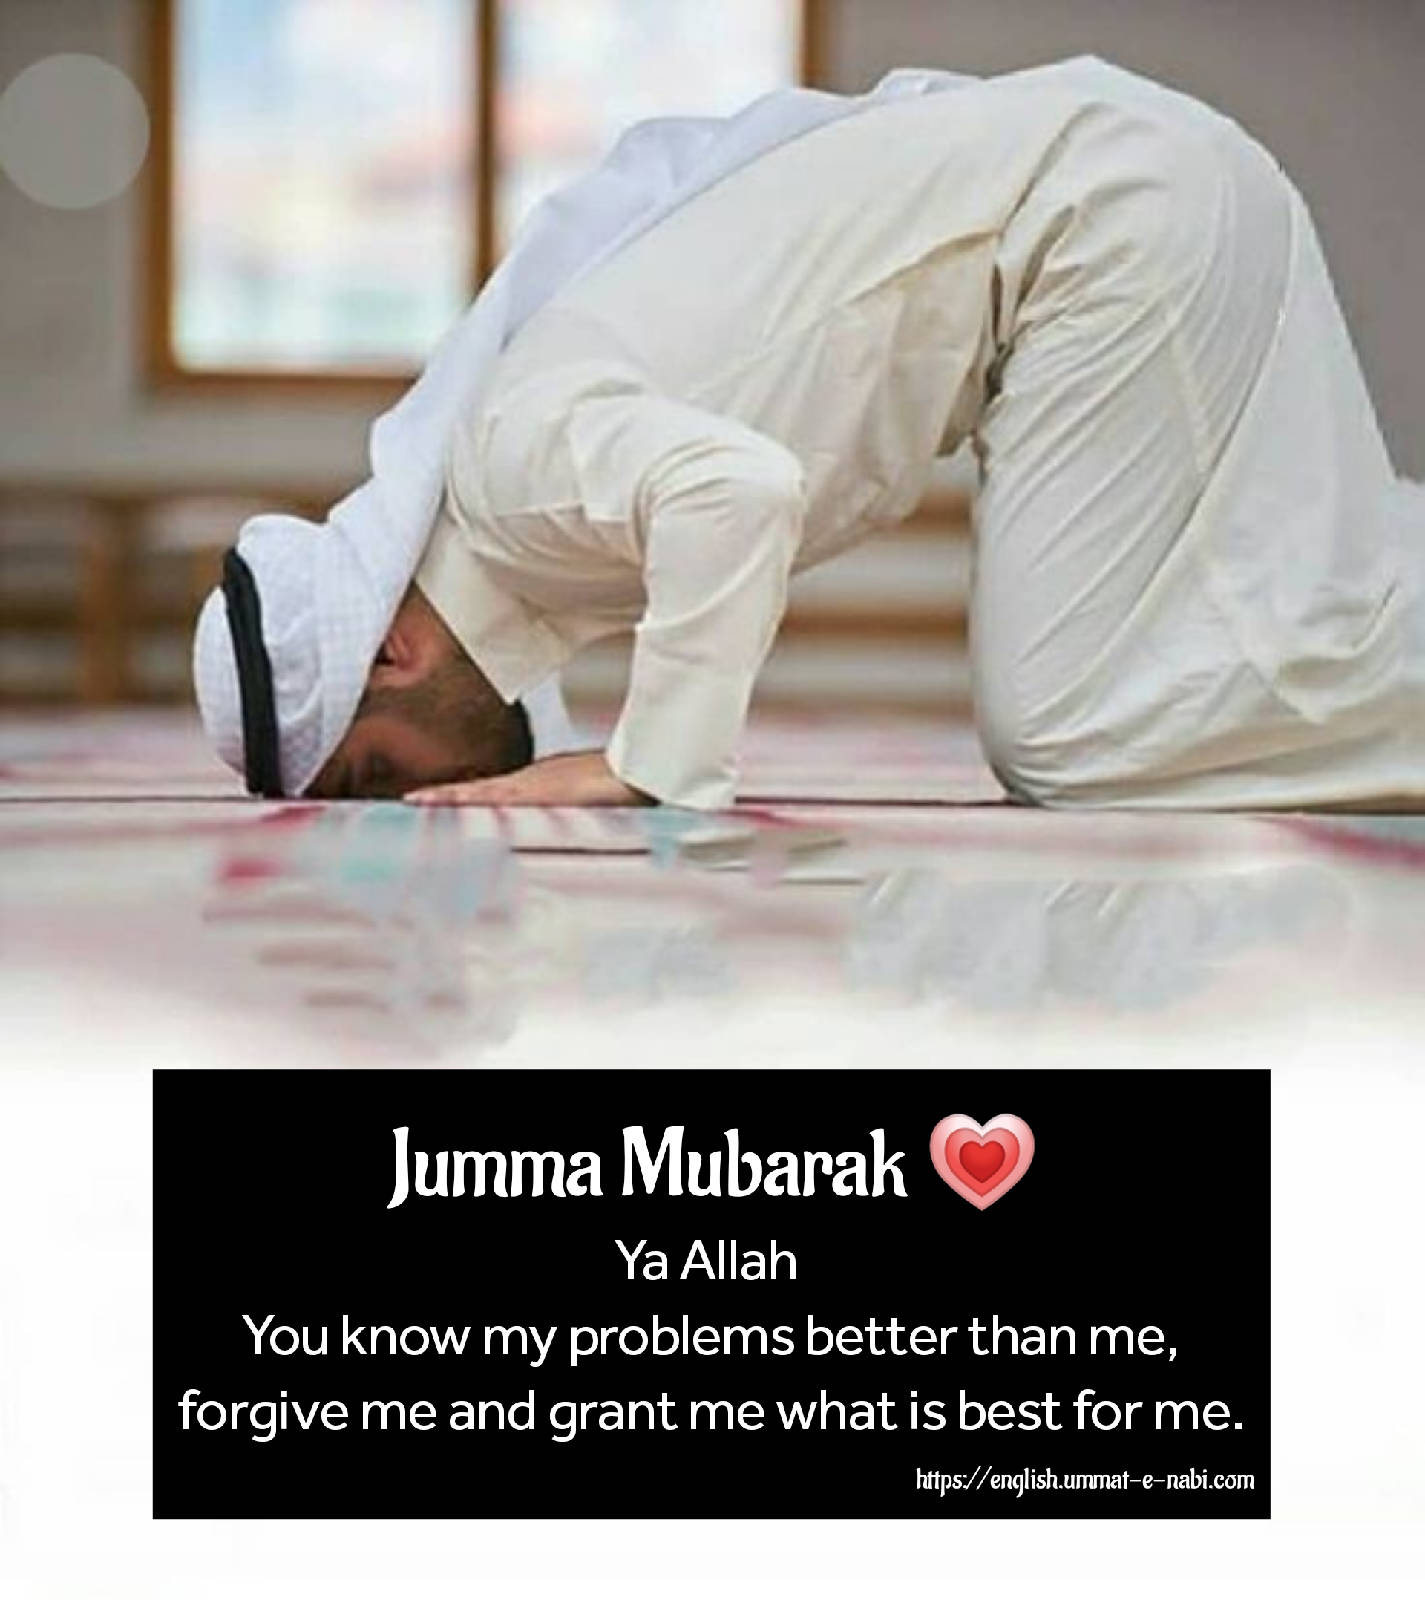 Jumma Mubarak Man Praying